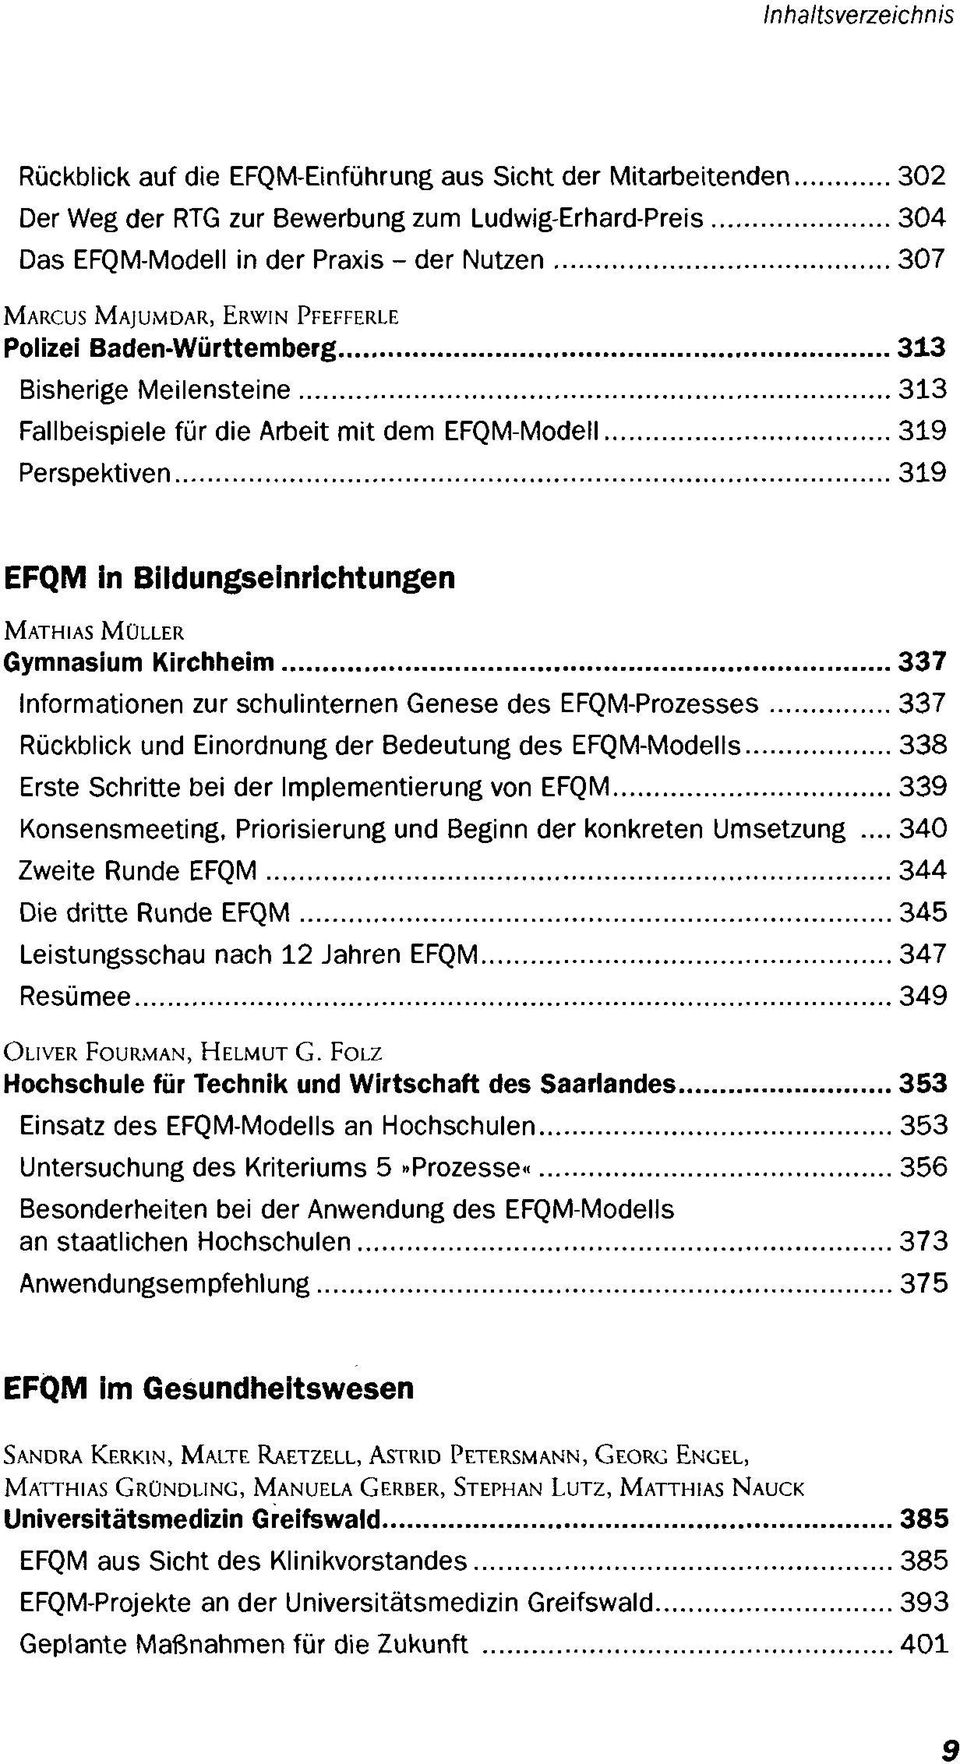 Kirchheim 337 Informationen zur schulinternen Genese des EFQM-Prozesses 337 Rückblick und Einordnung der Bedeutung des EFQM-Modells 338 Erste Schritte bei der Implementierung von EFQM 339